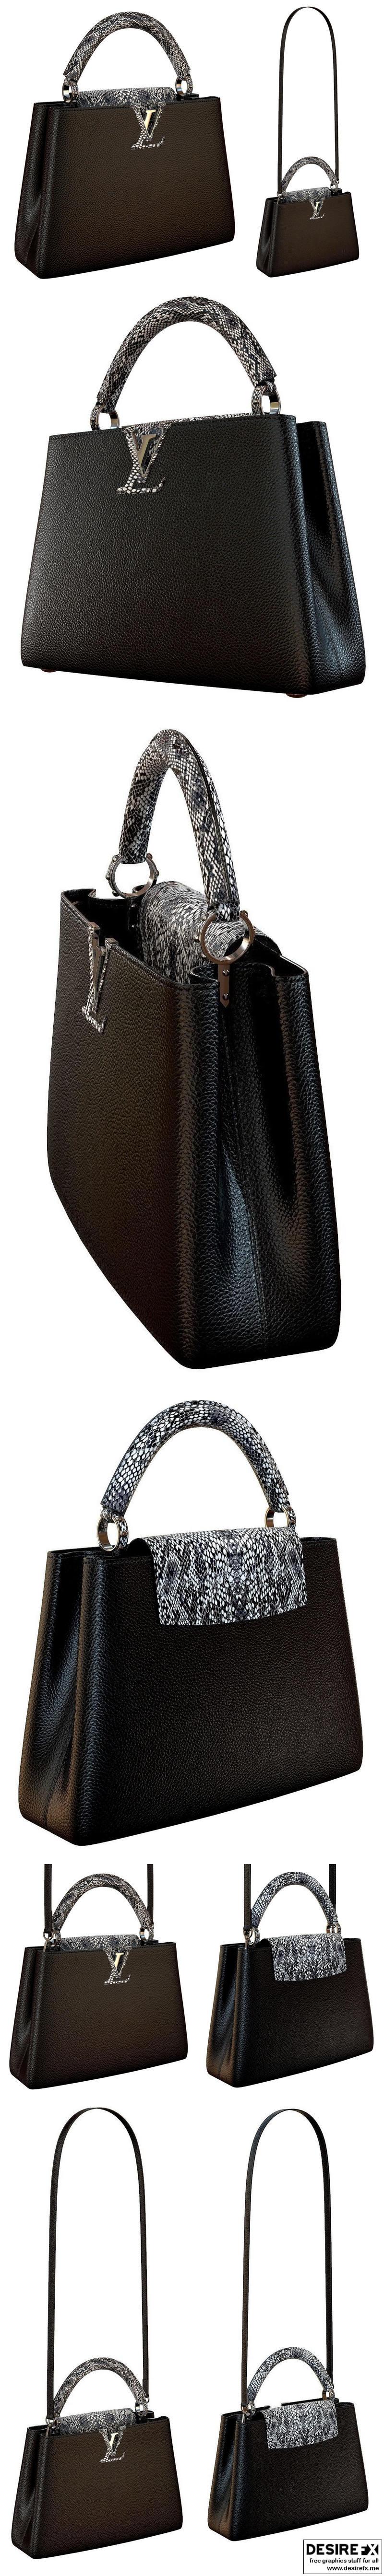 Louis Vuitton bag Capucines White Leather | 3D model